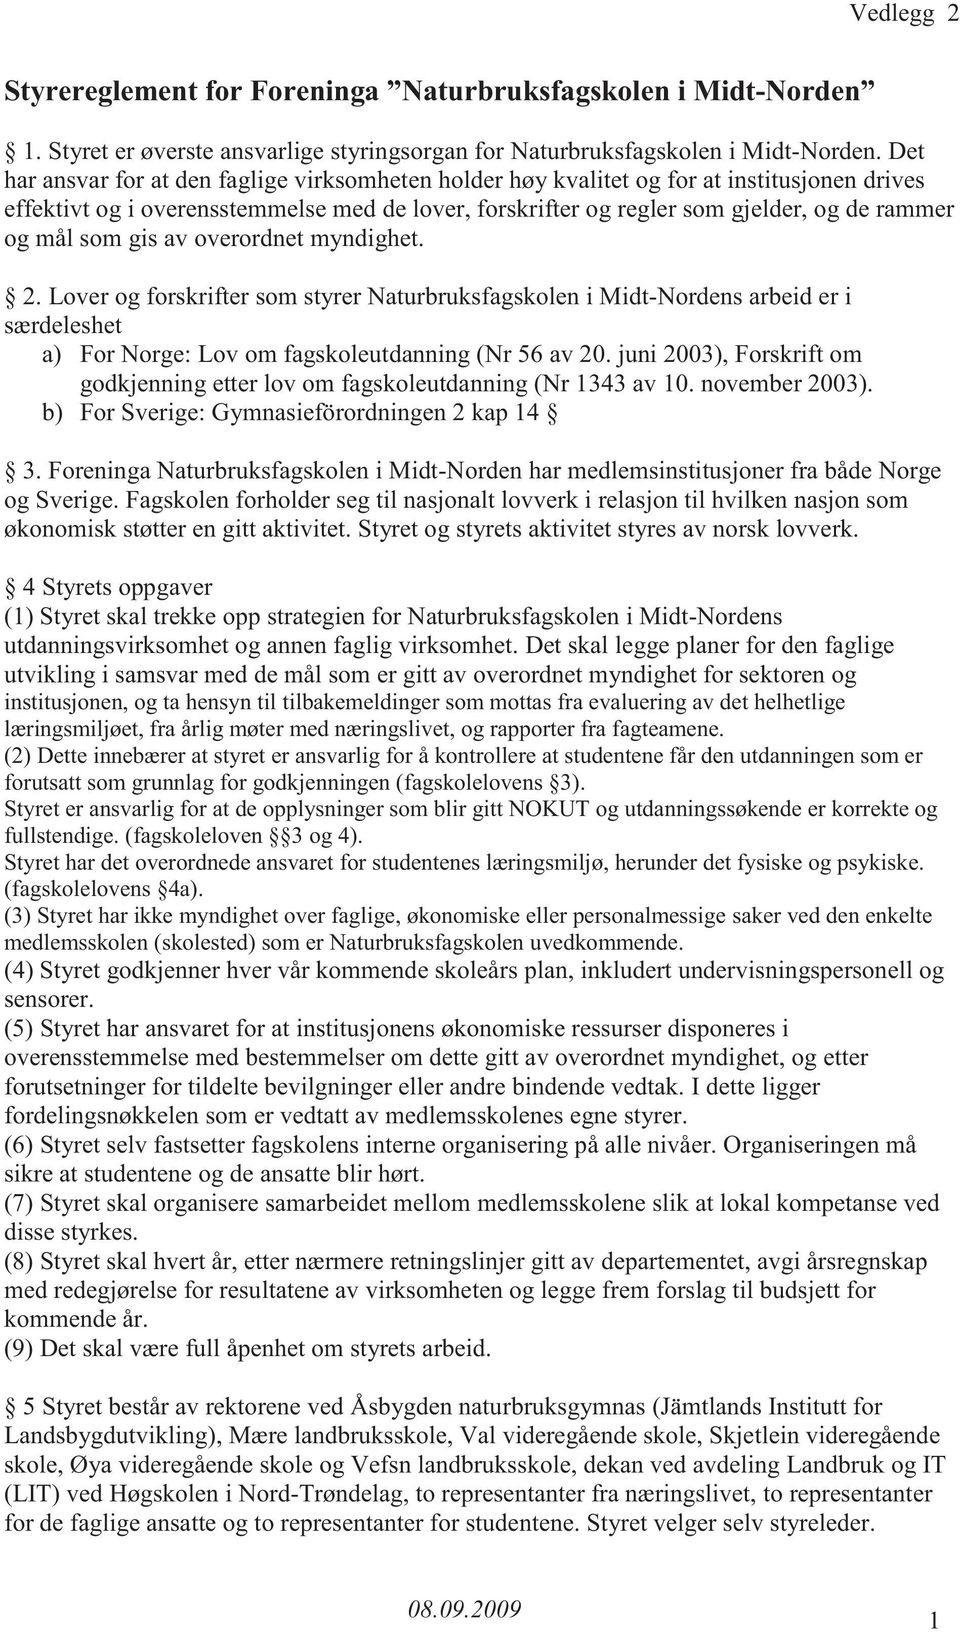 som gis av overordnet myndighet. 2. Lover og forskrifter som styrer Naturbruksfagskolen i Midt-Nordens arbeid er i særdeleshet a) For Norge: Lov om fagskoleutdanning (Nr 56 av 20.